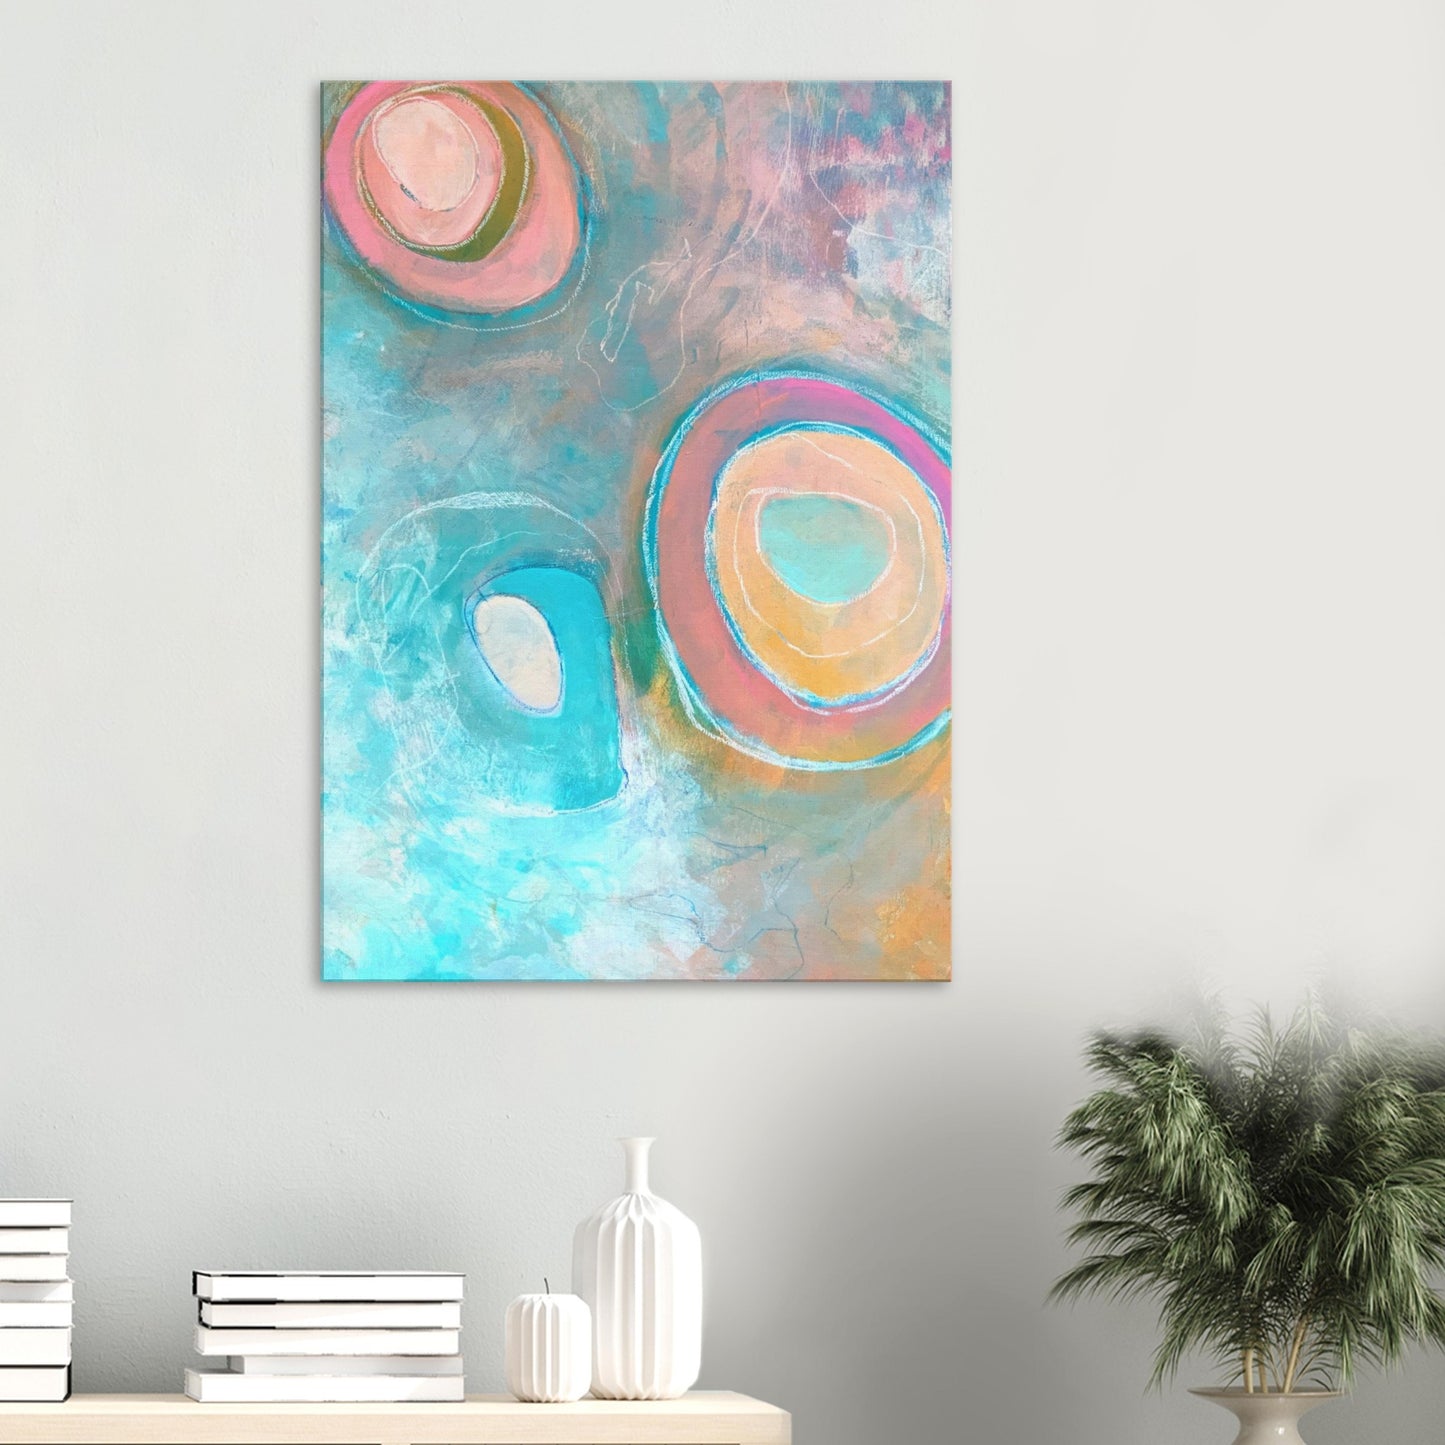 Kleurrijk modern abstract schilderij in blauw, roze en geel tinten